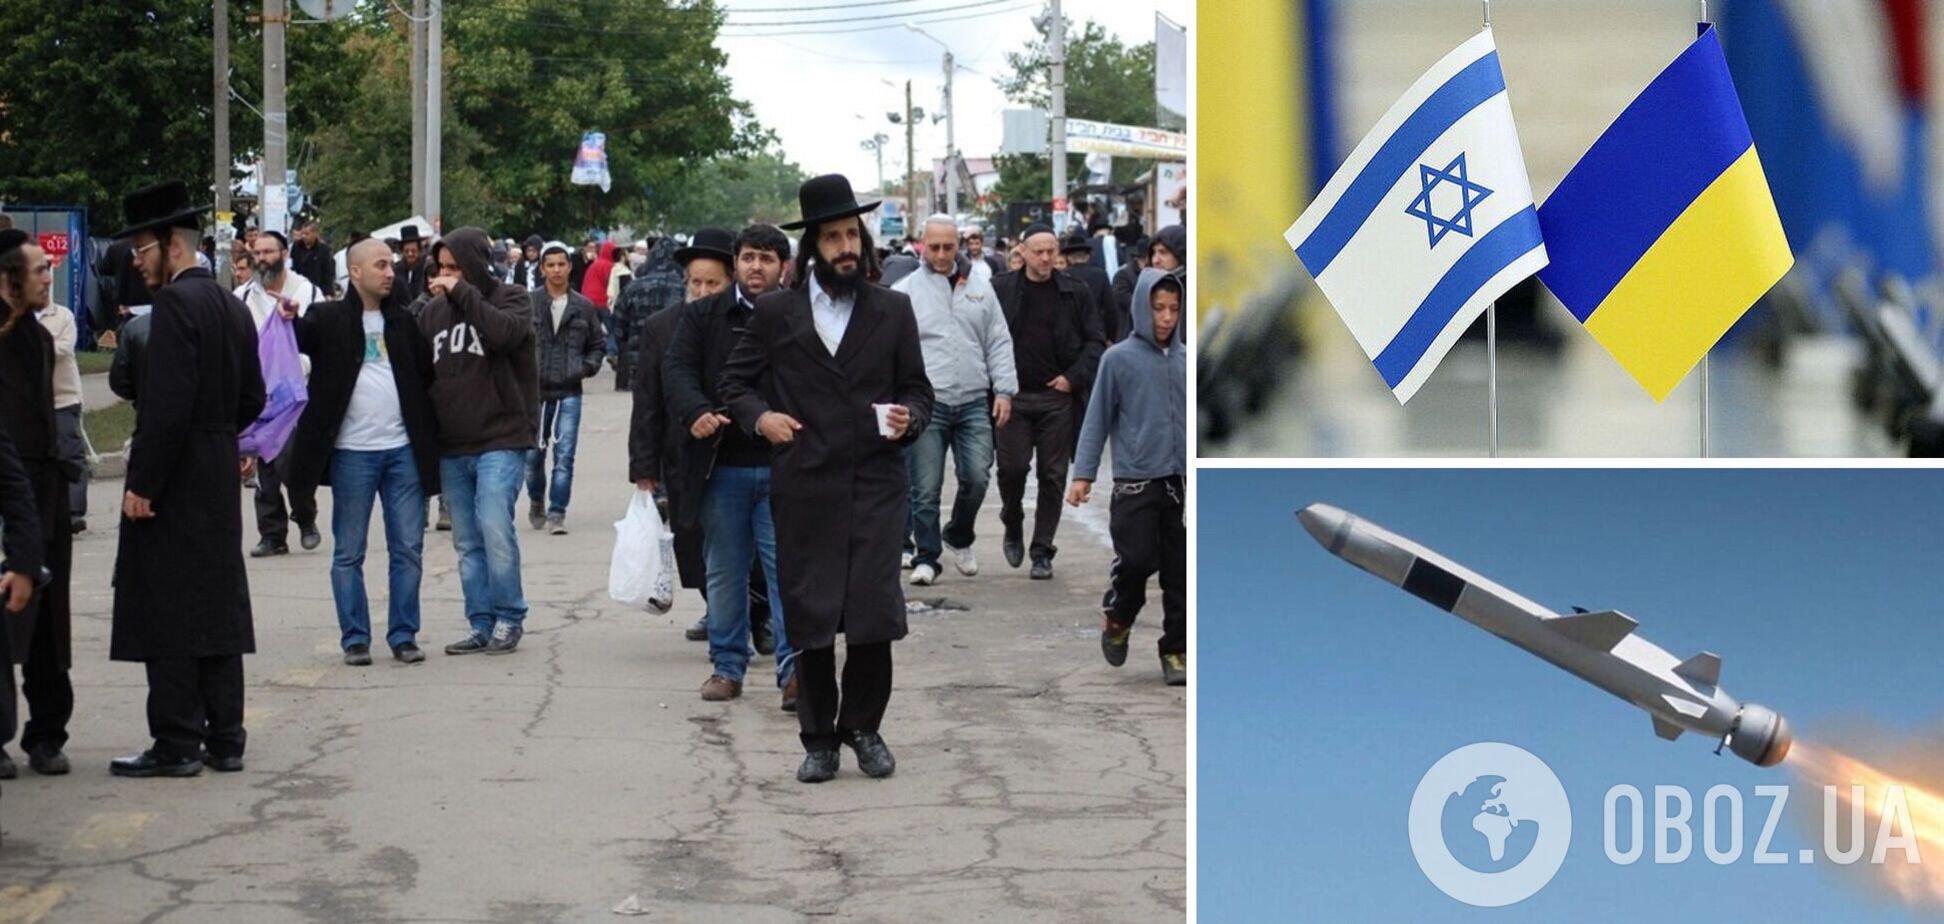 РФ ударила ракетой по Уманскому району, еврейская община тоже в опасности